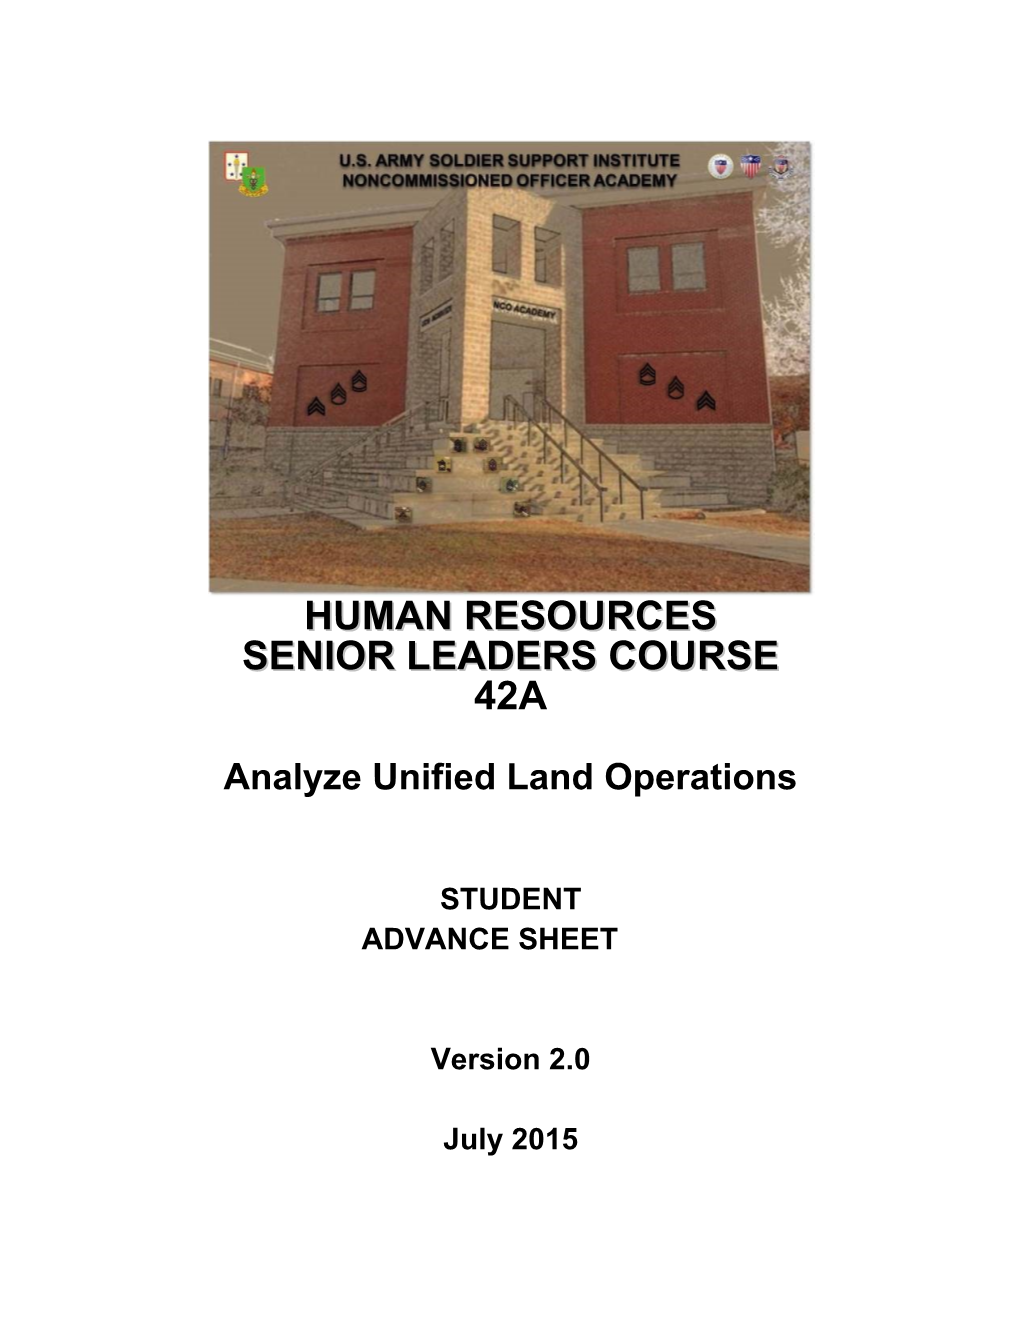 Analyze Unified Land Operations Advance Sheet